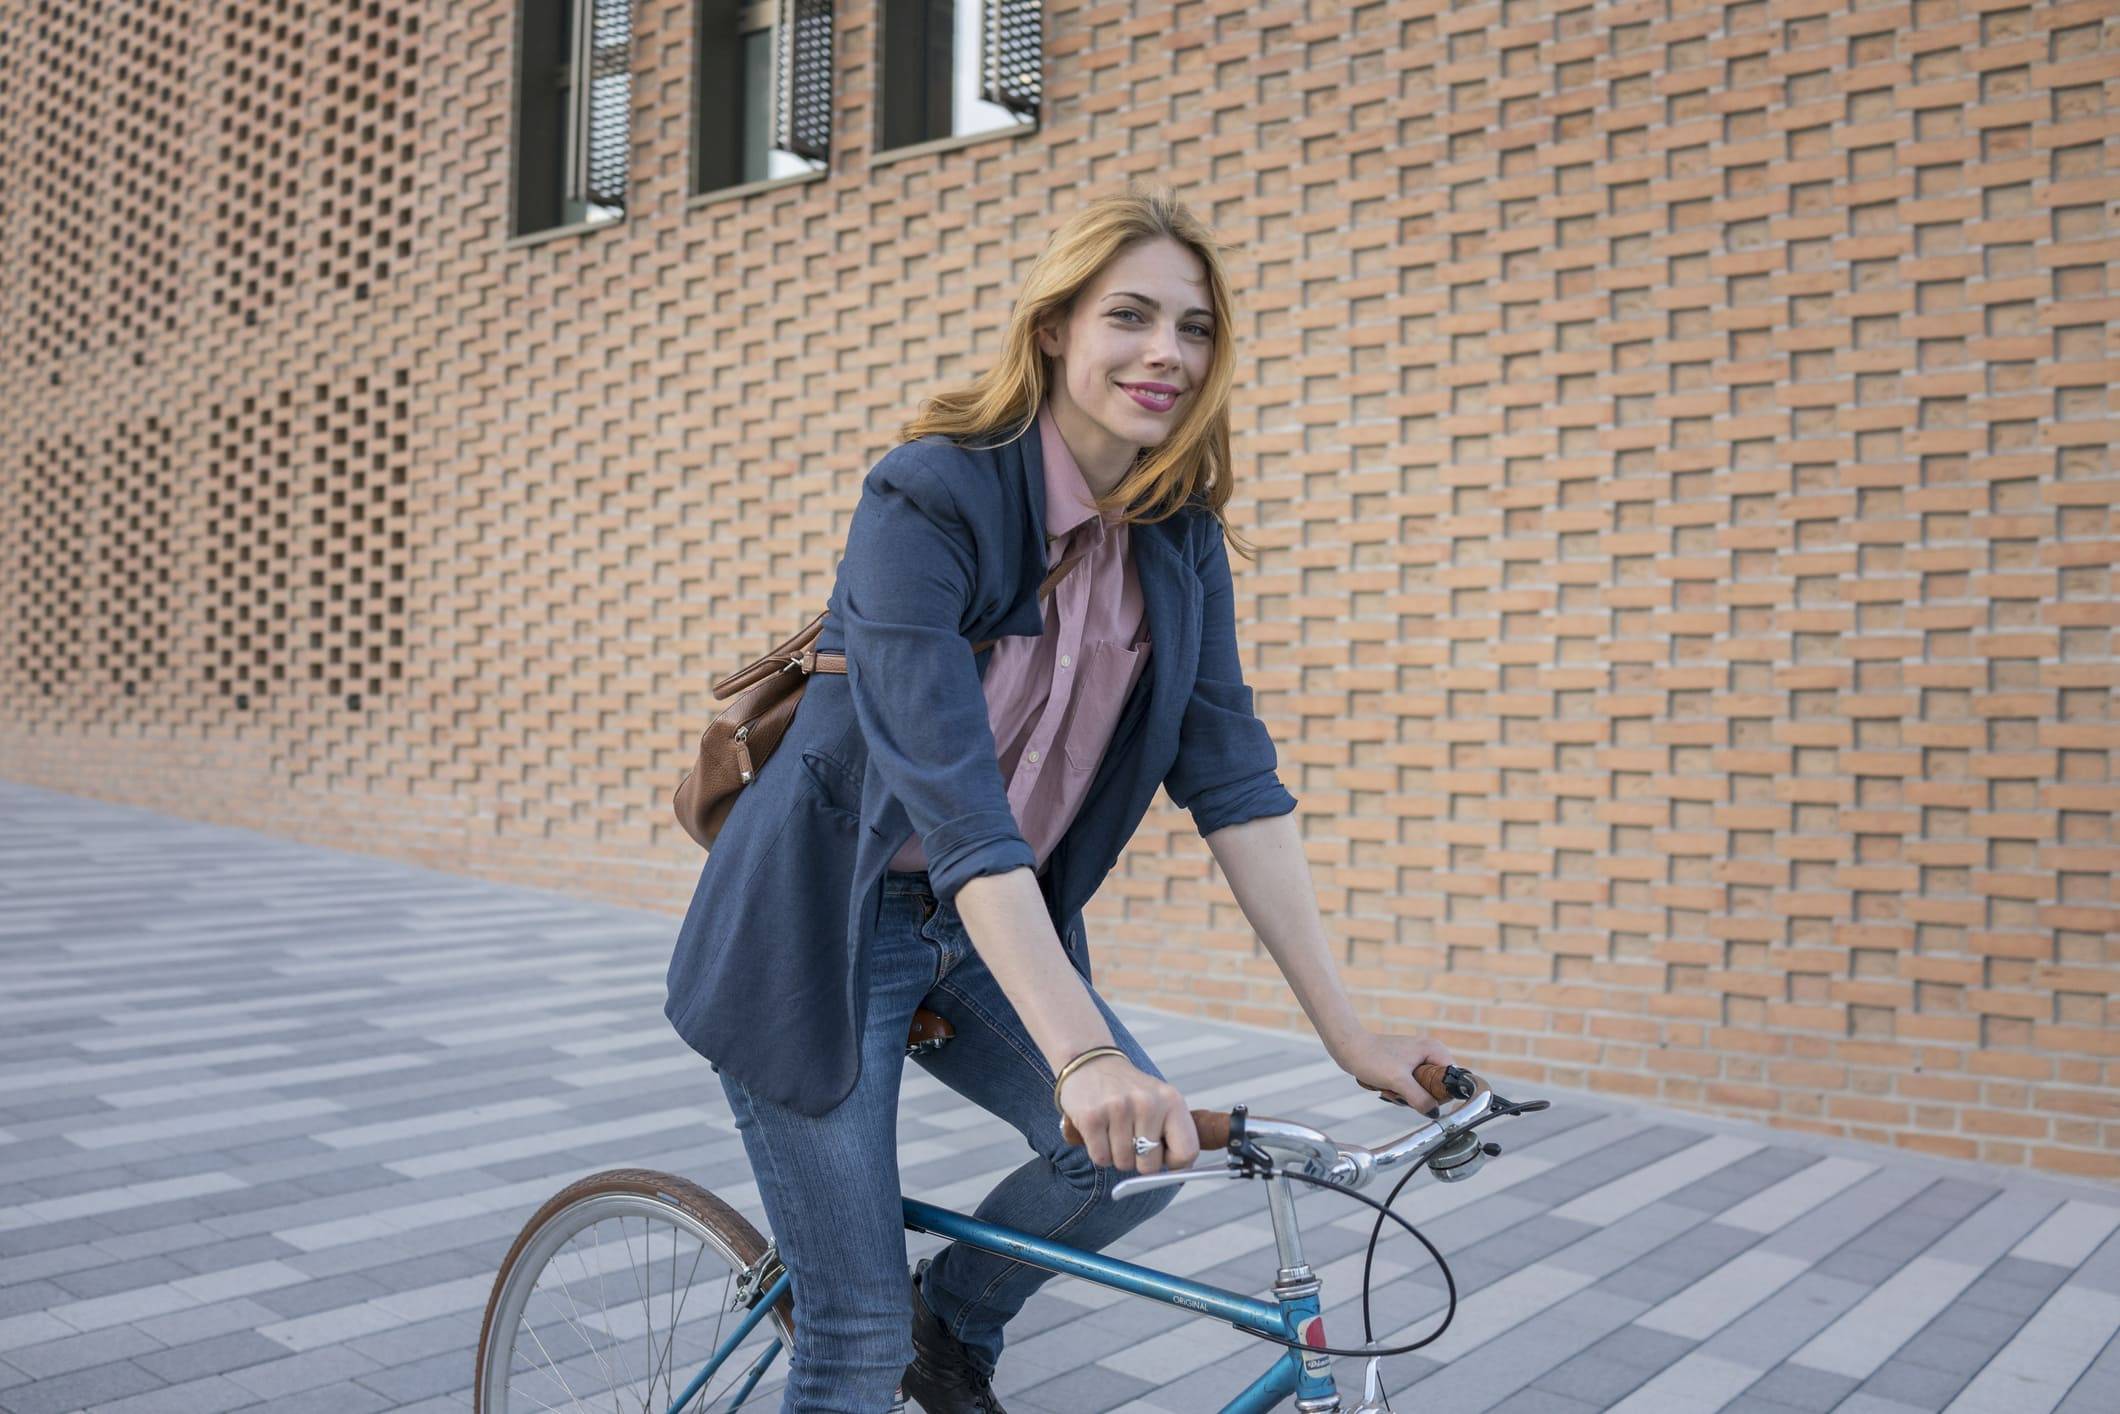 Junge Frau mit Rucksack vor Gebäude sitzt auf Fahrrad und lächelt